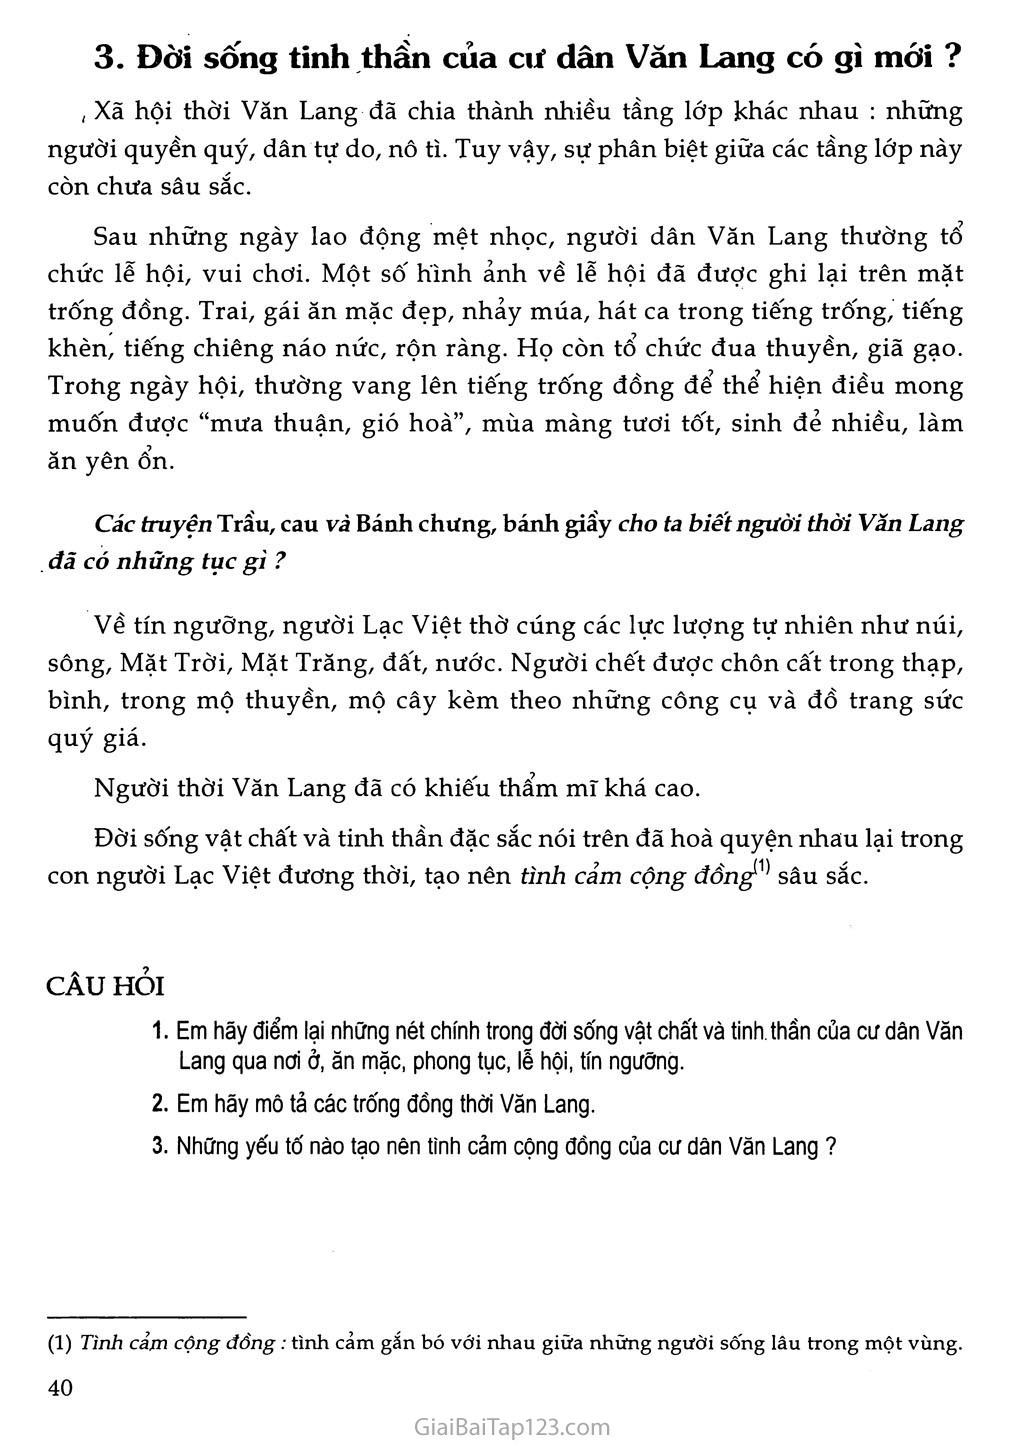 Bài 13 - Đời sống vật chất và tinh thần của cư dân Văn Lang (1 tiết) trang 3